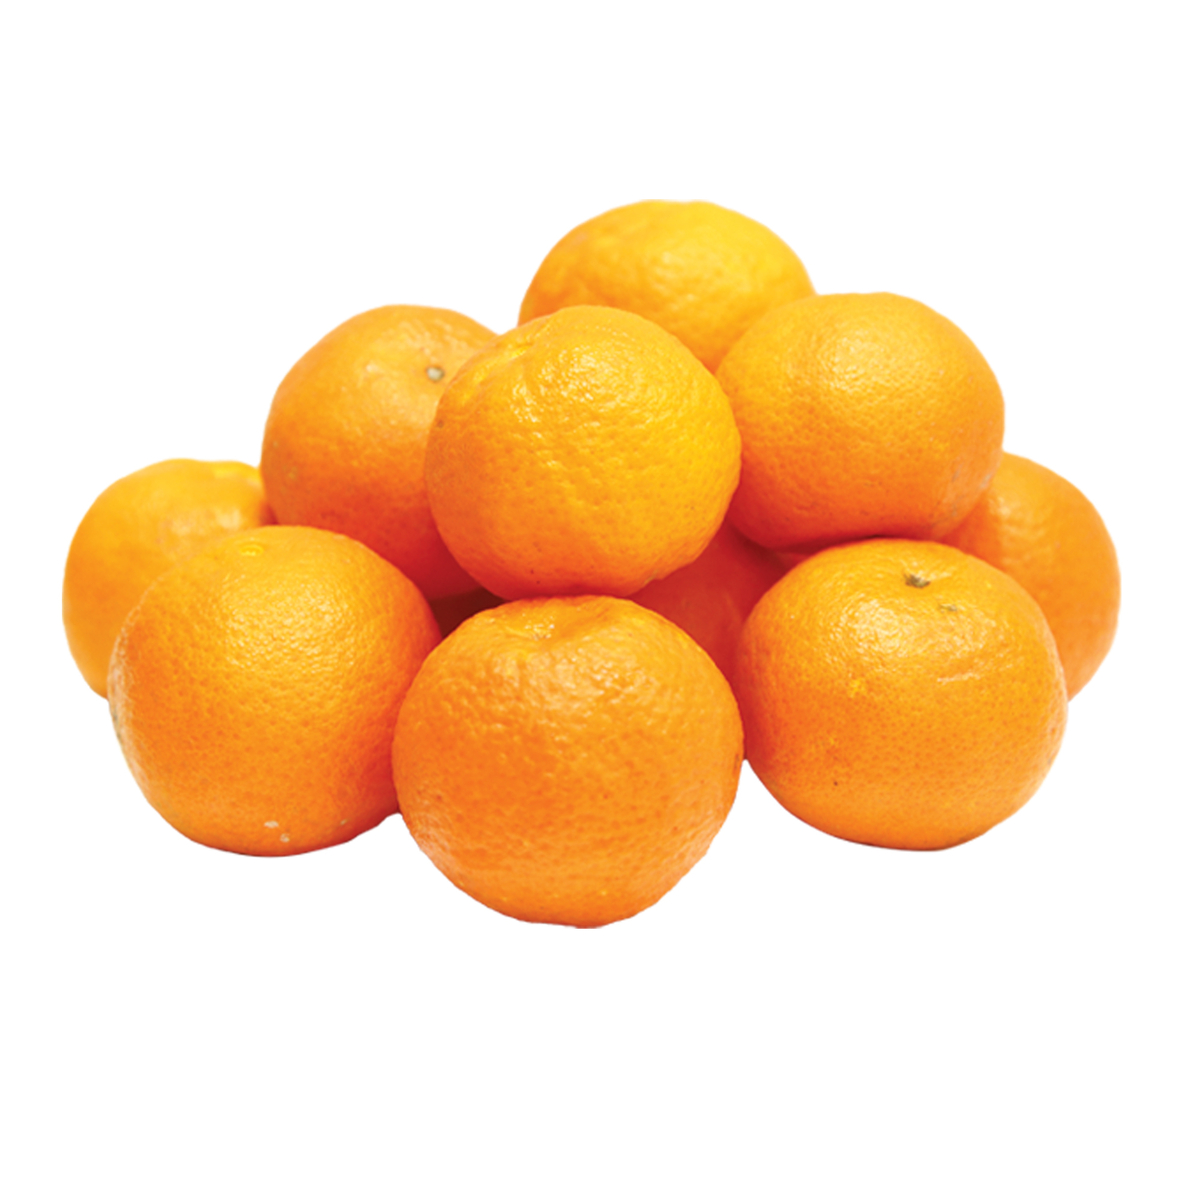 Buy Mandarin Murcott Egypt 1 kg Online at Best Price | Citrus Fruits | Lulu KSA in Kuwait